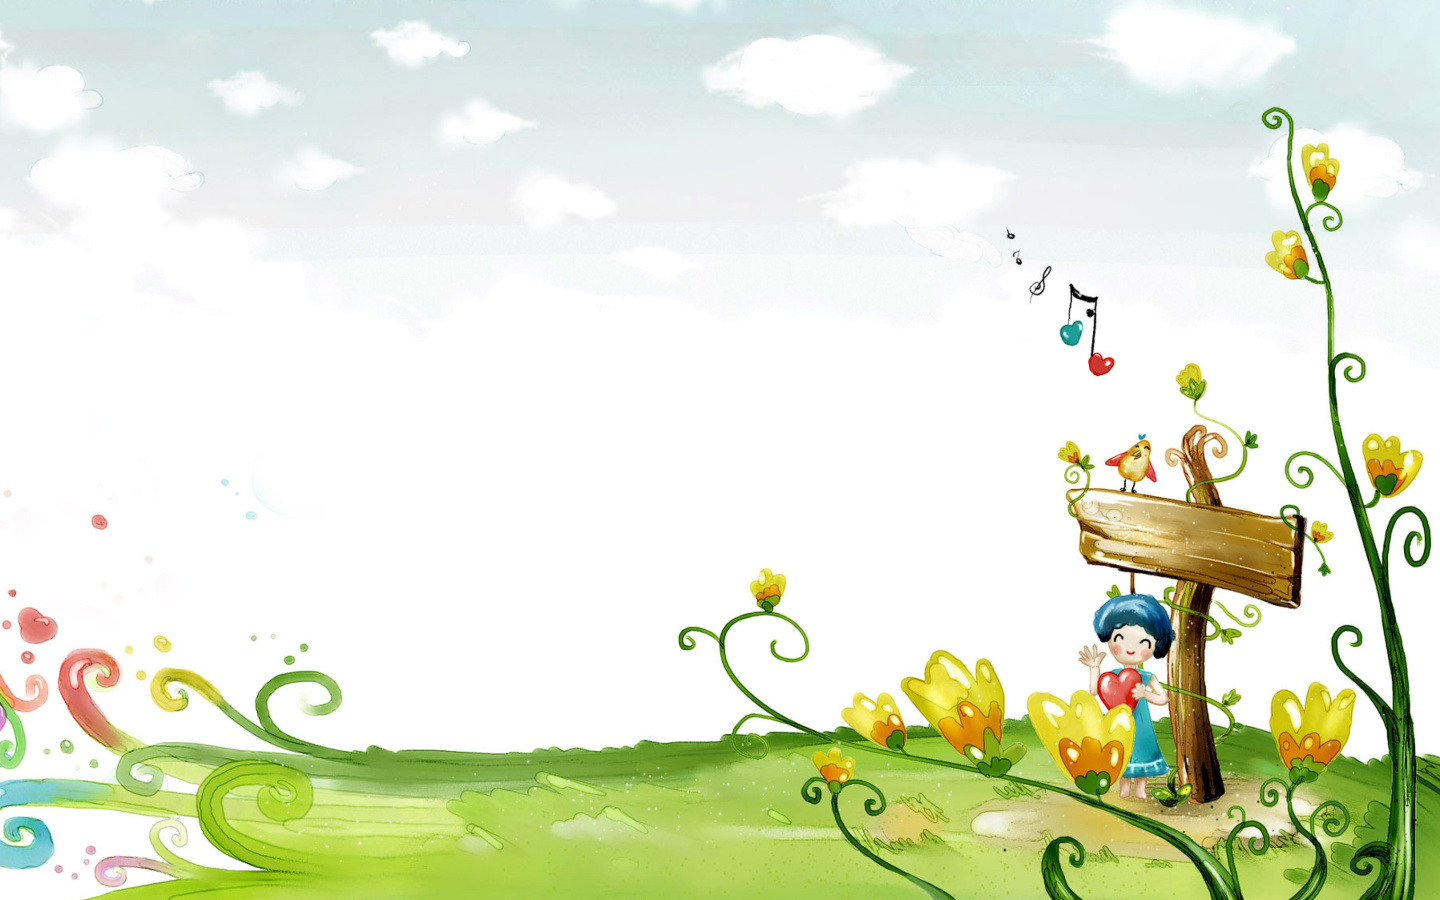 Fairyland Illustration wallpaper 1440x900